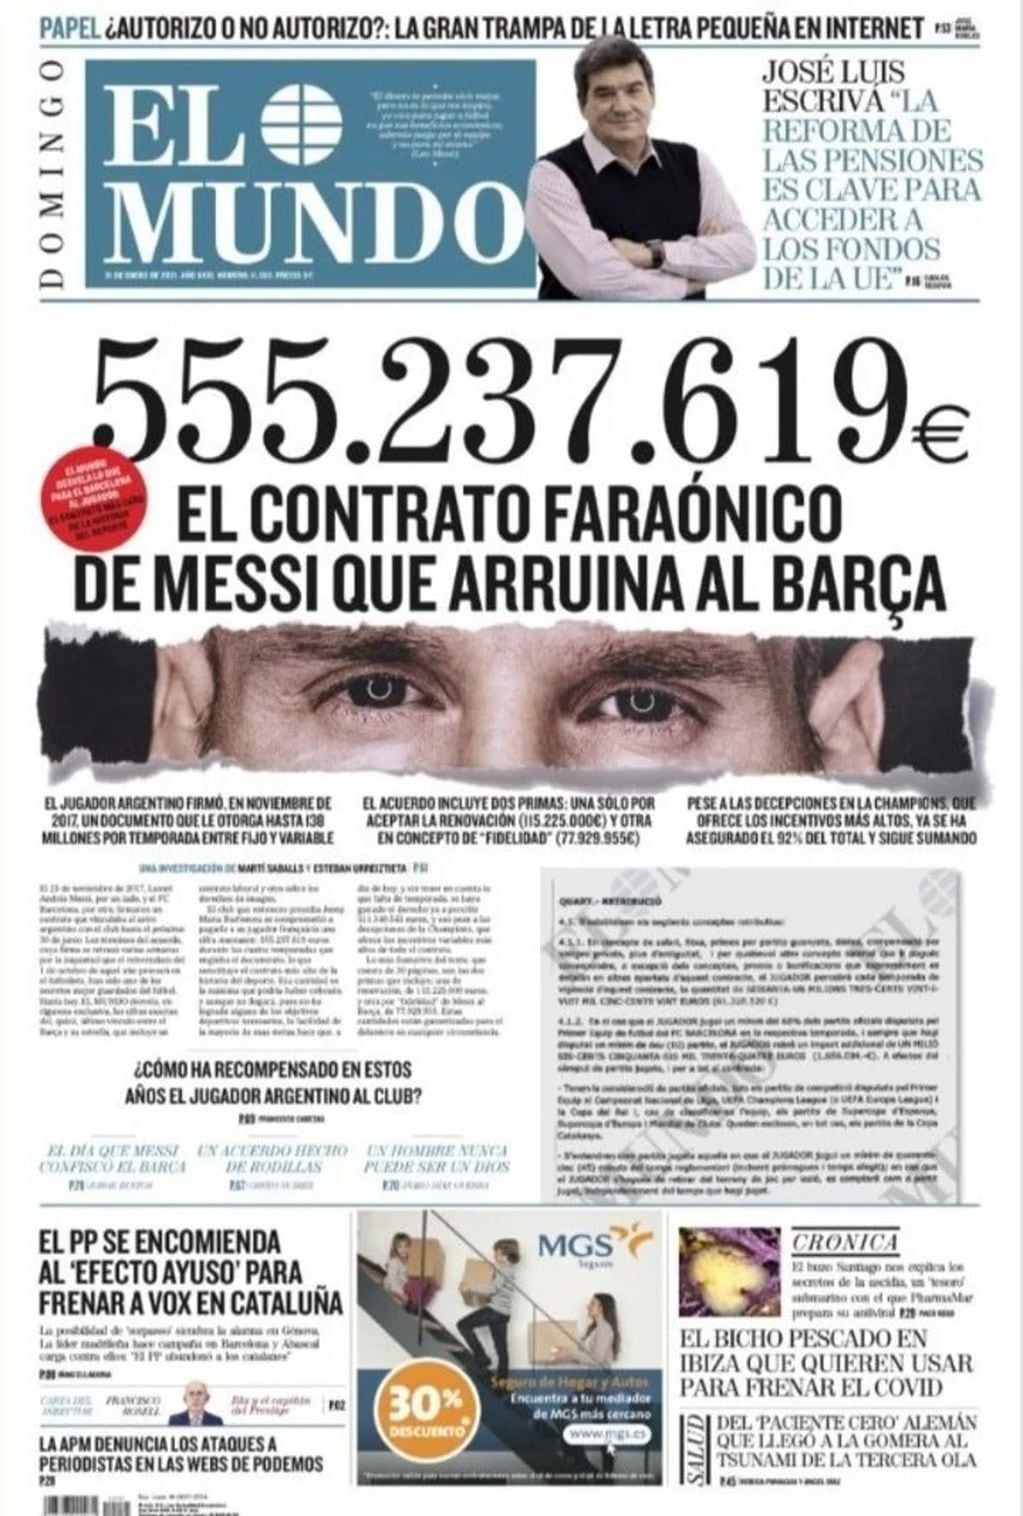 La portada del diario "El Mundo" de este domingo.